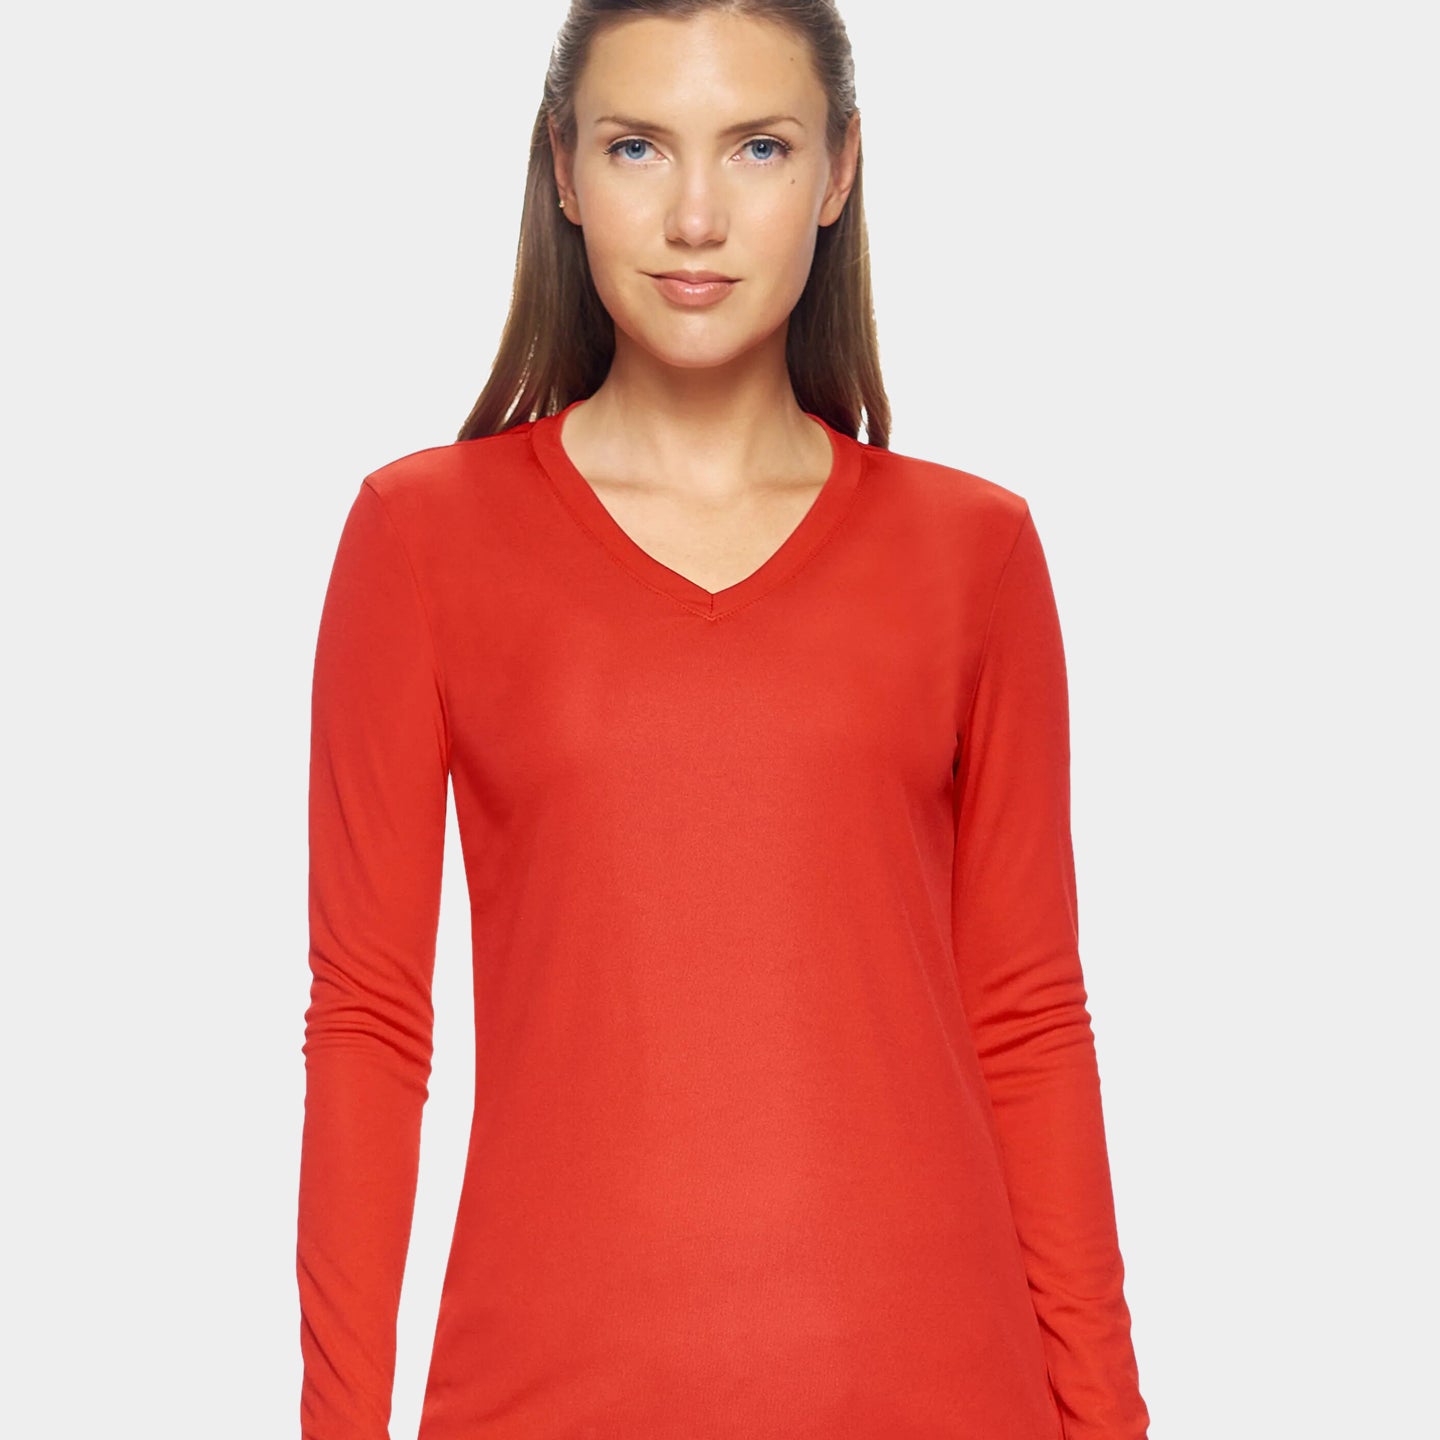 Expert Brand DriMax Women's Performance V-Neck Long Sleeve Shirt, 3XL, Red A1